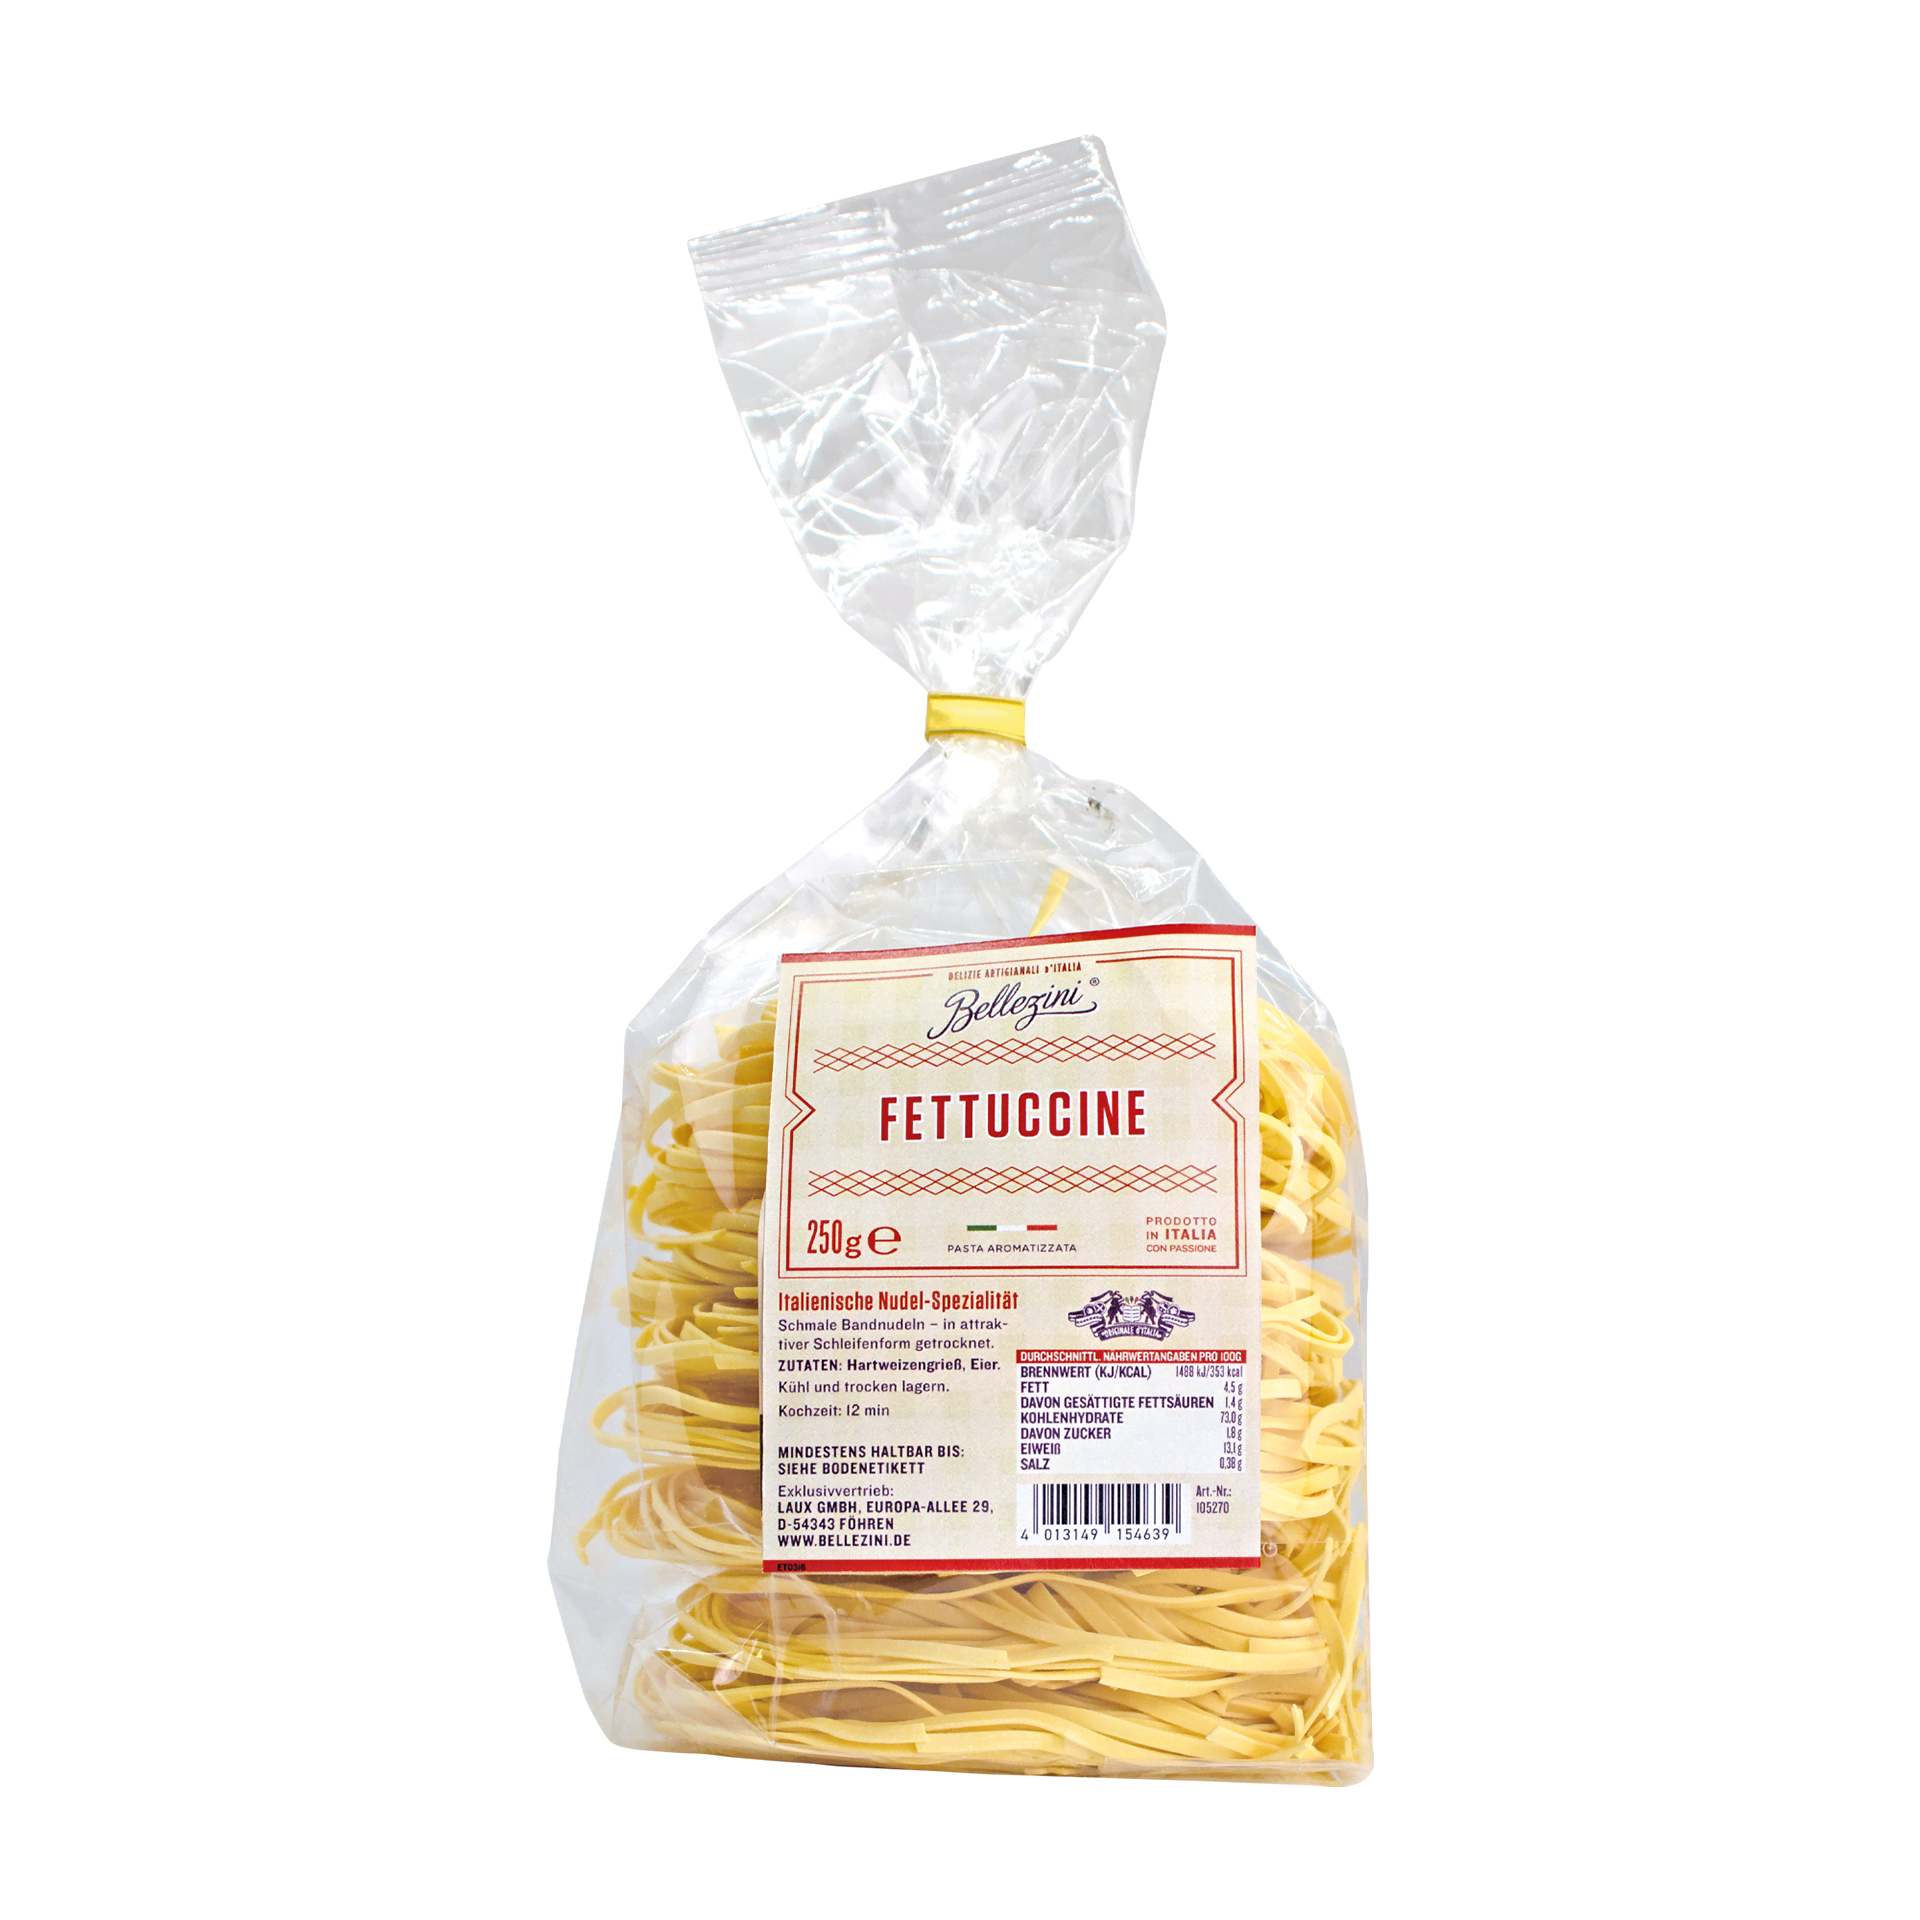 Fettuccine - Original italienische Pasta